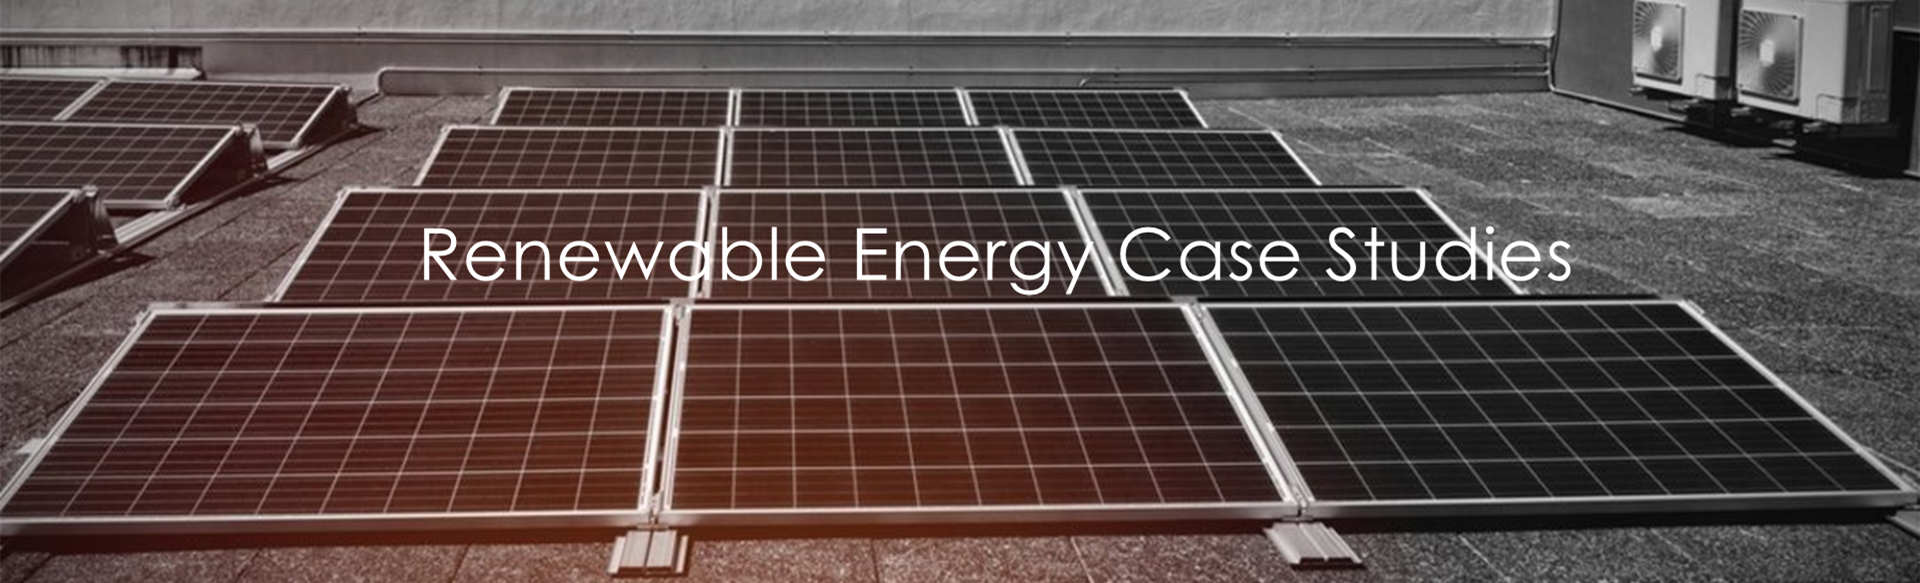 Renewable Energy Case Studies